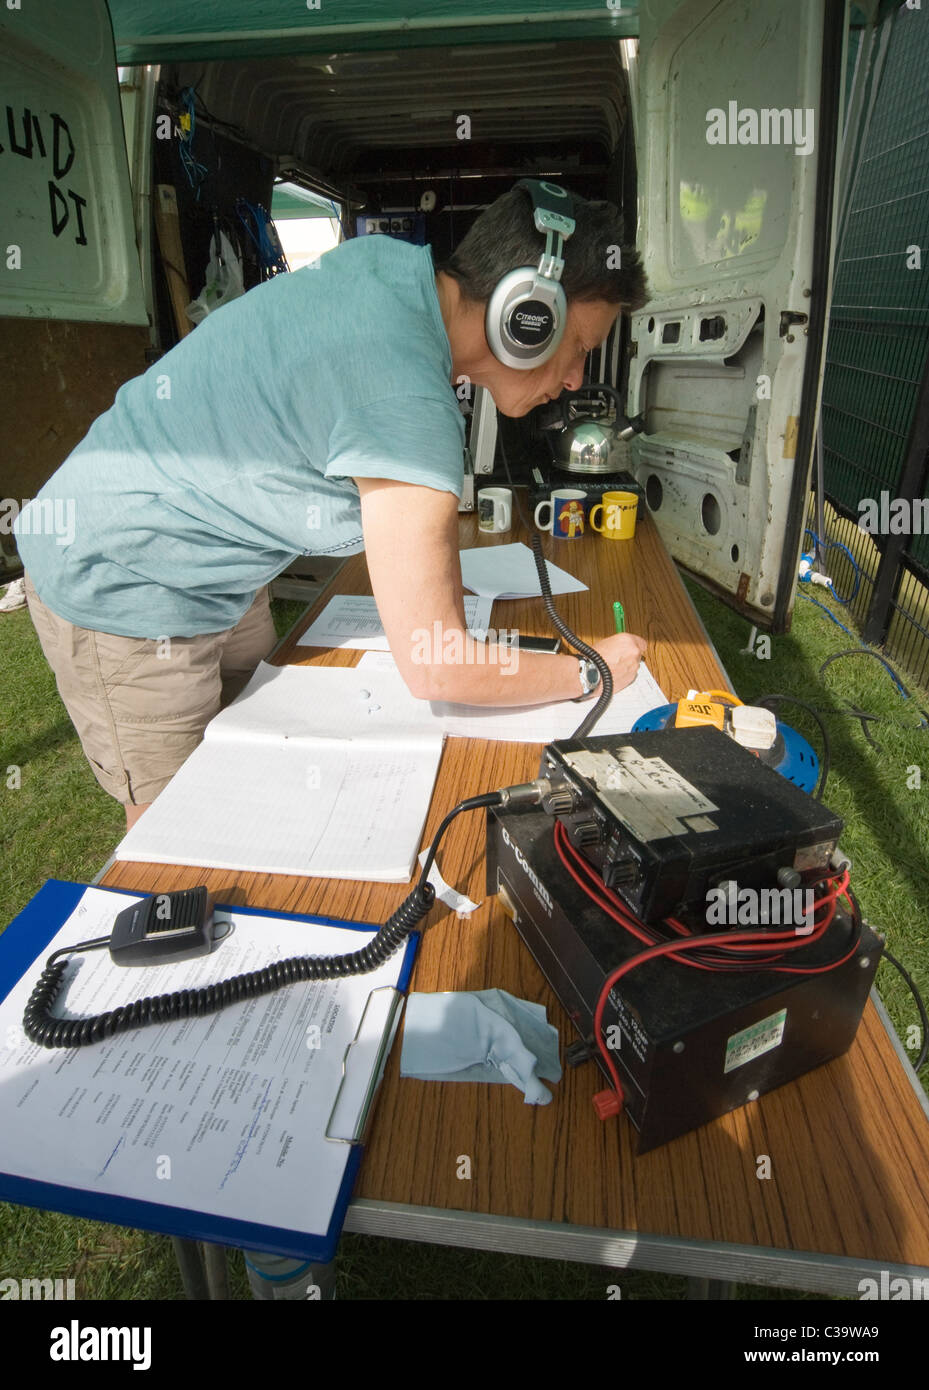 Operador de radio fotografías e imágenes de alta resolución - Alamy